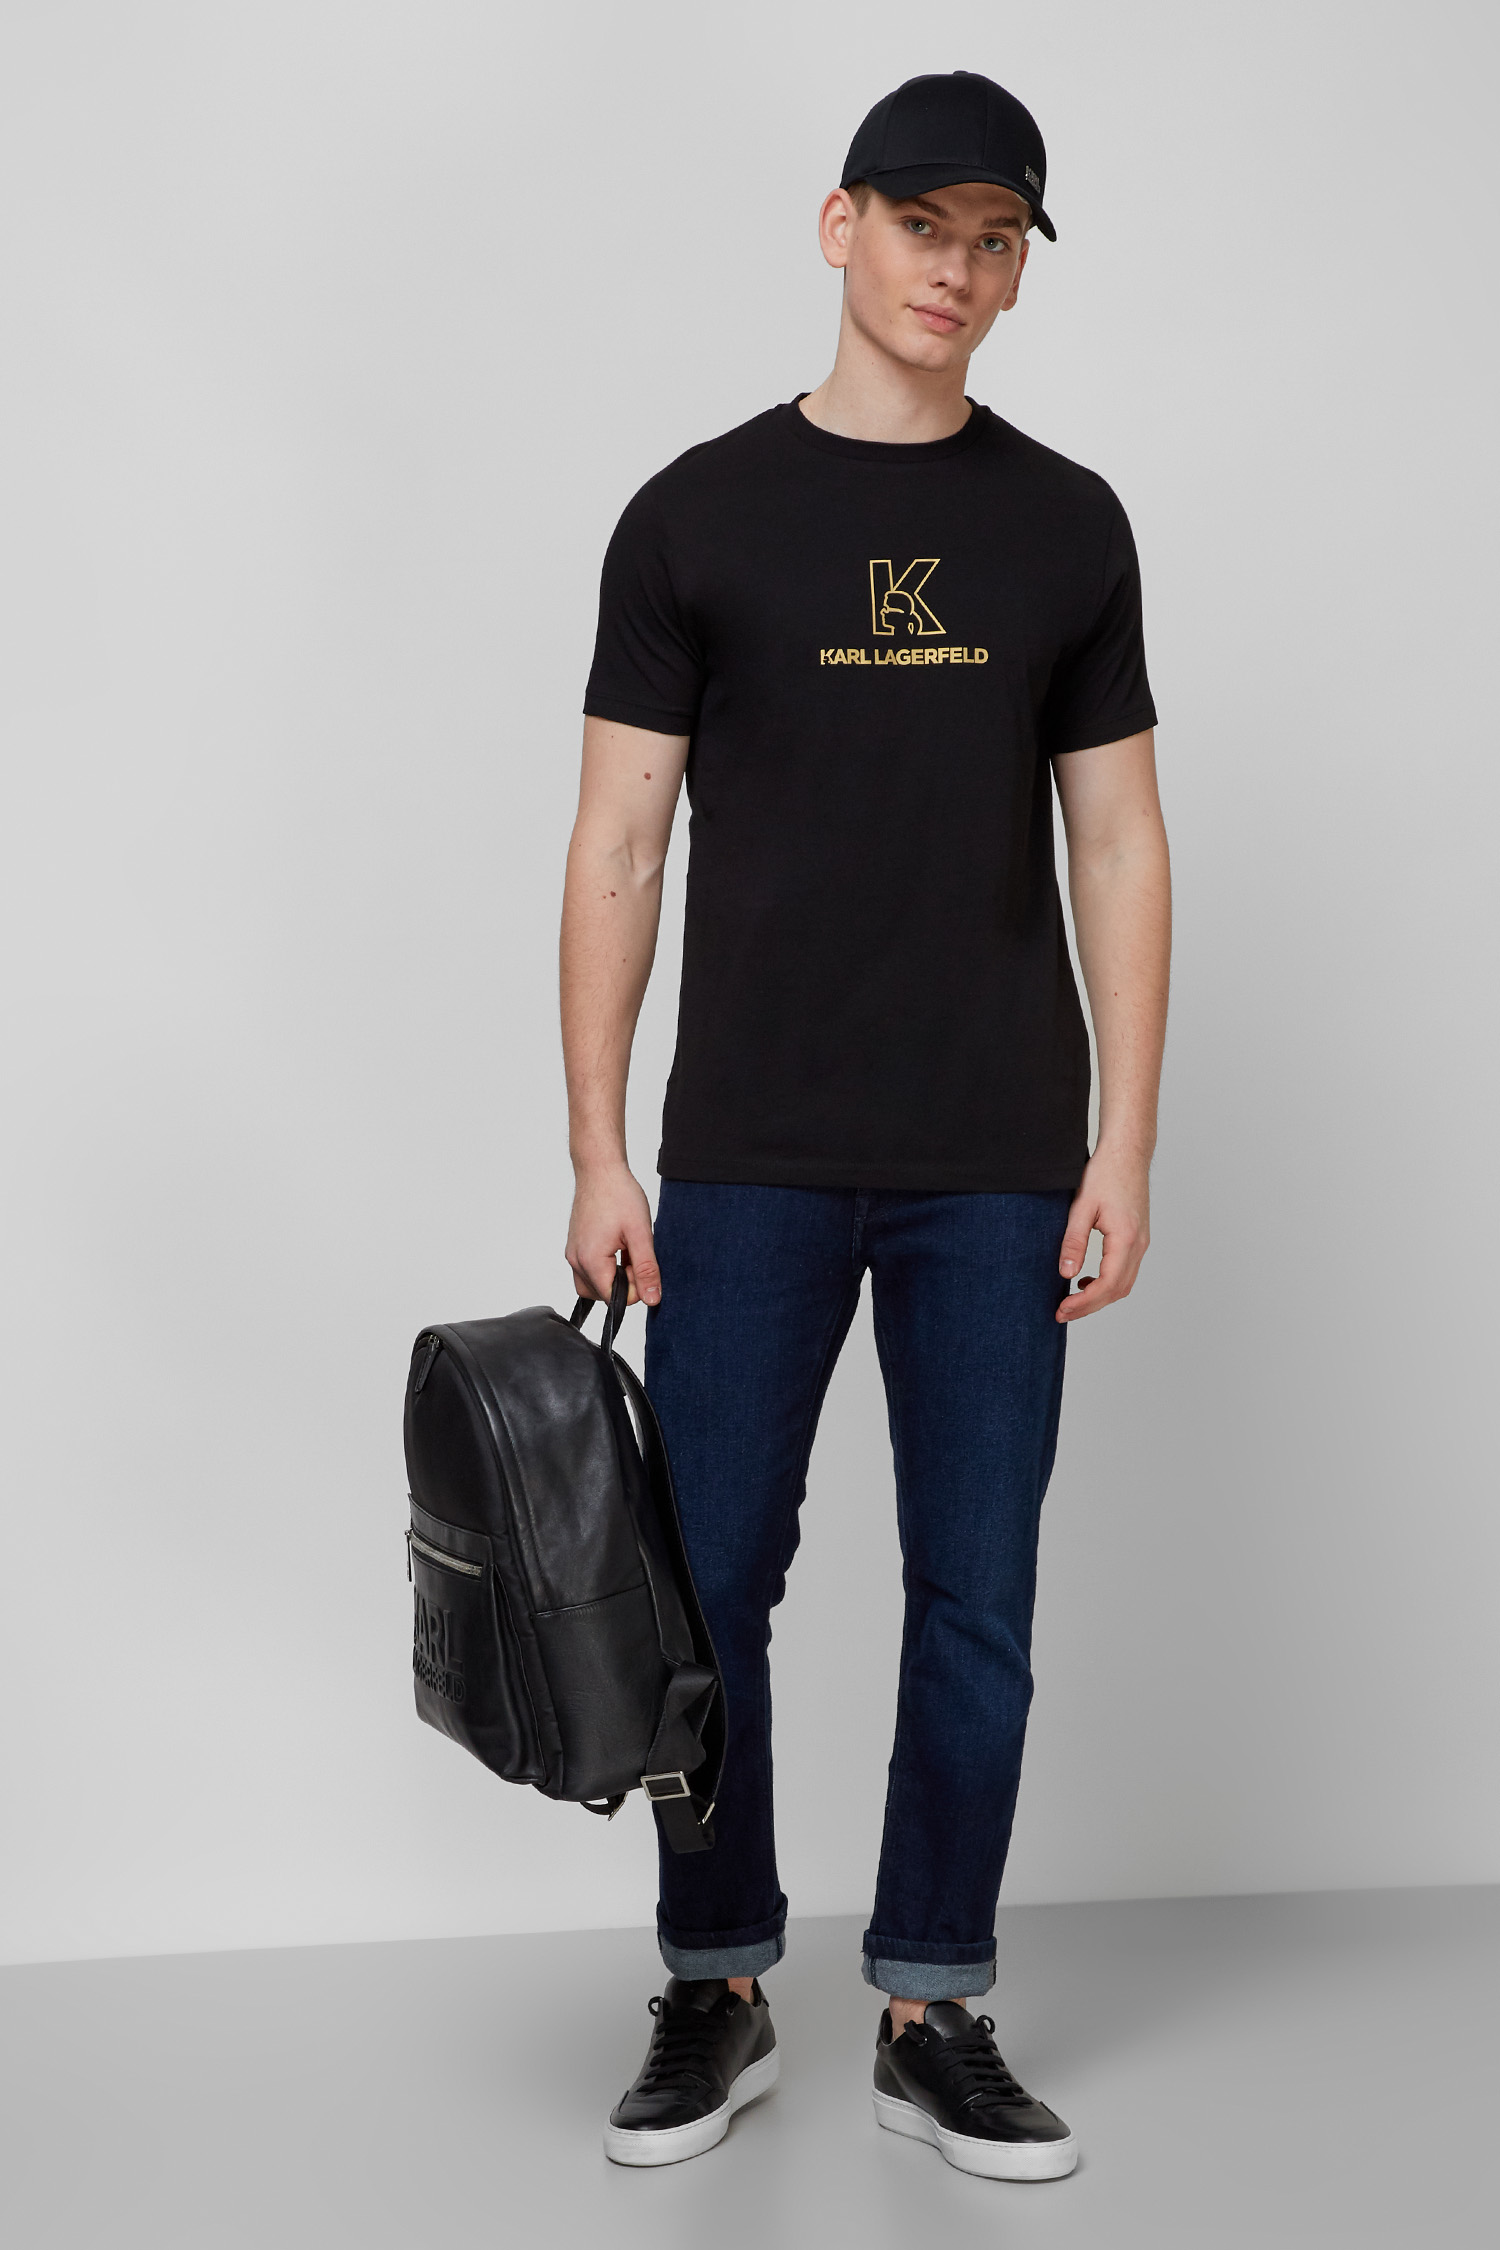 Чорна футболка для хлопців Karl Lagerfeld 512224.755049;990